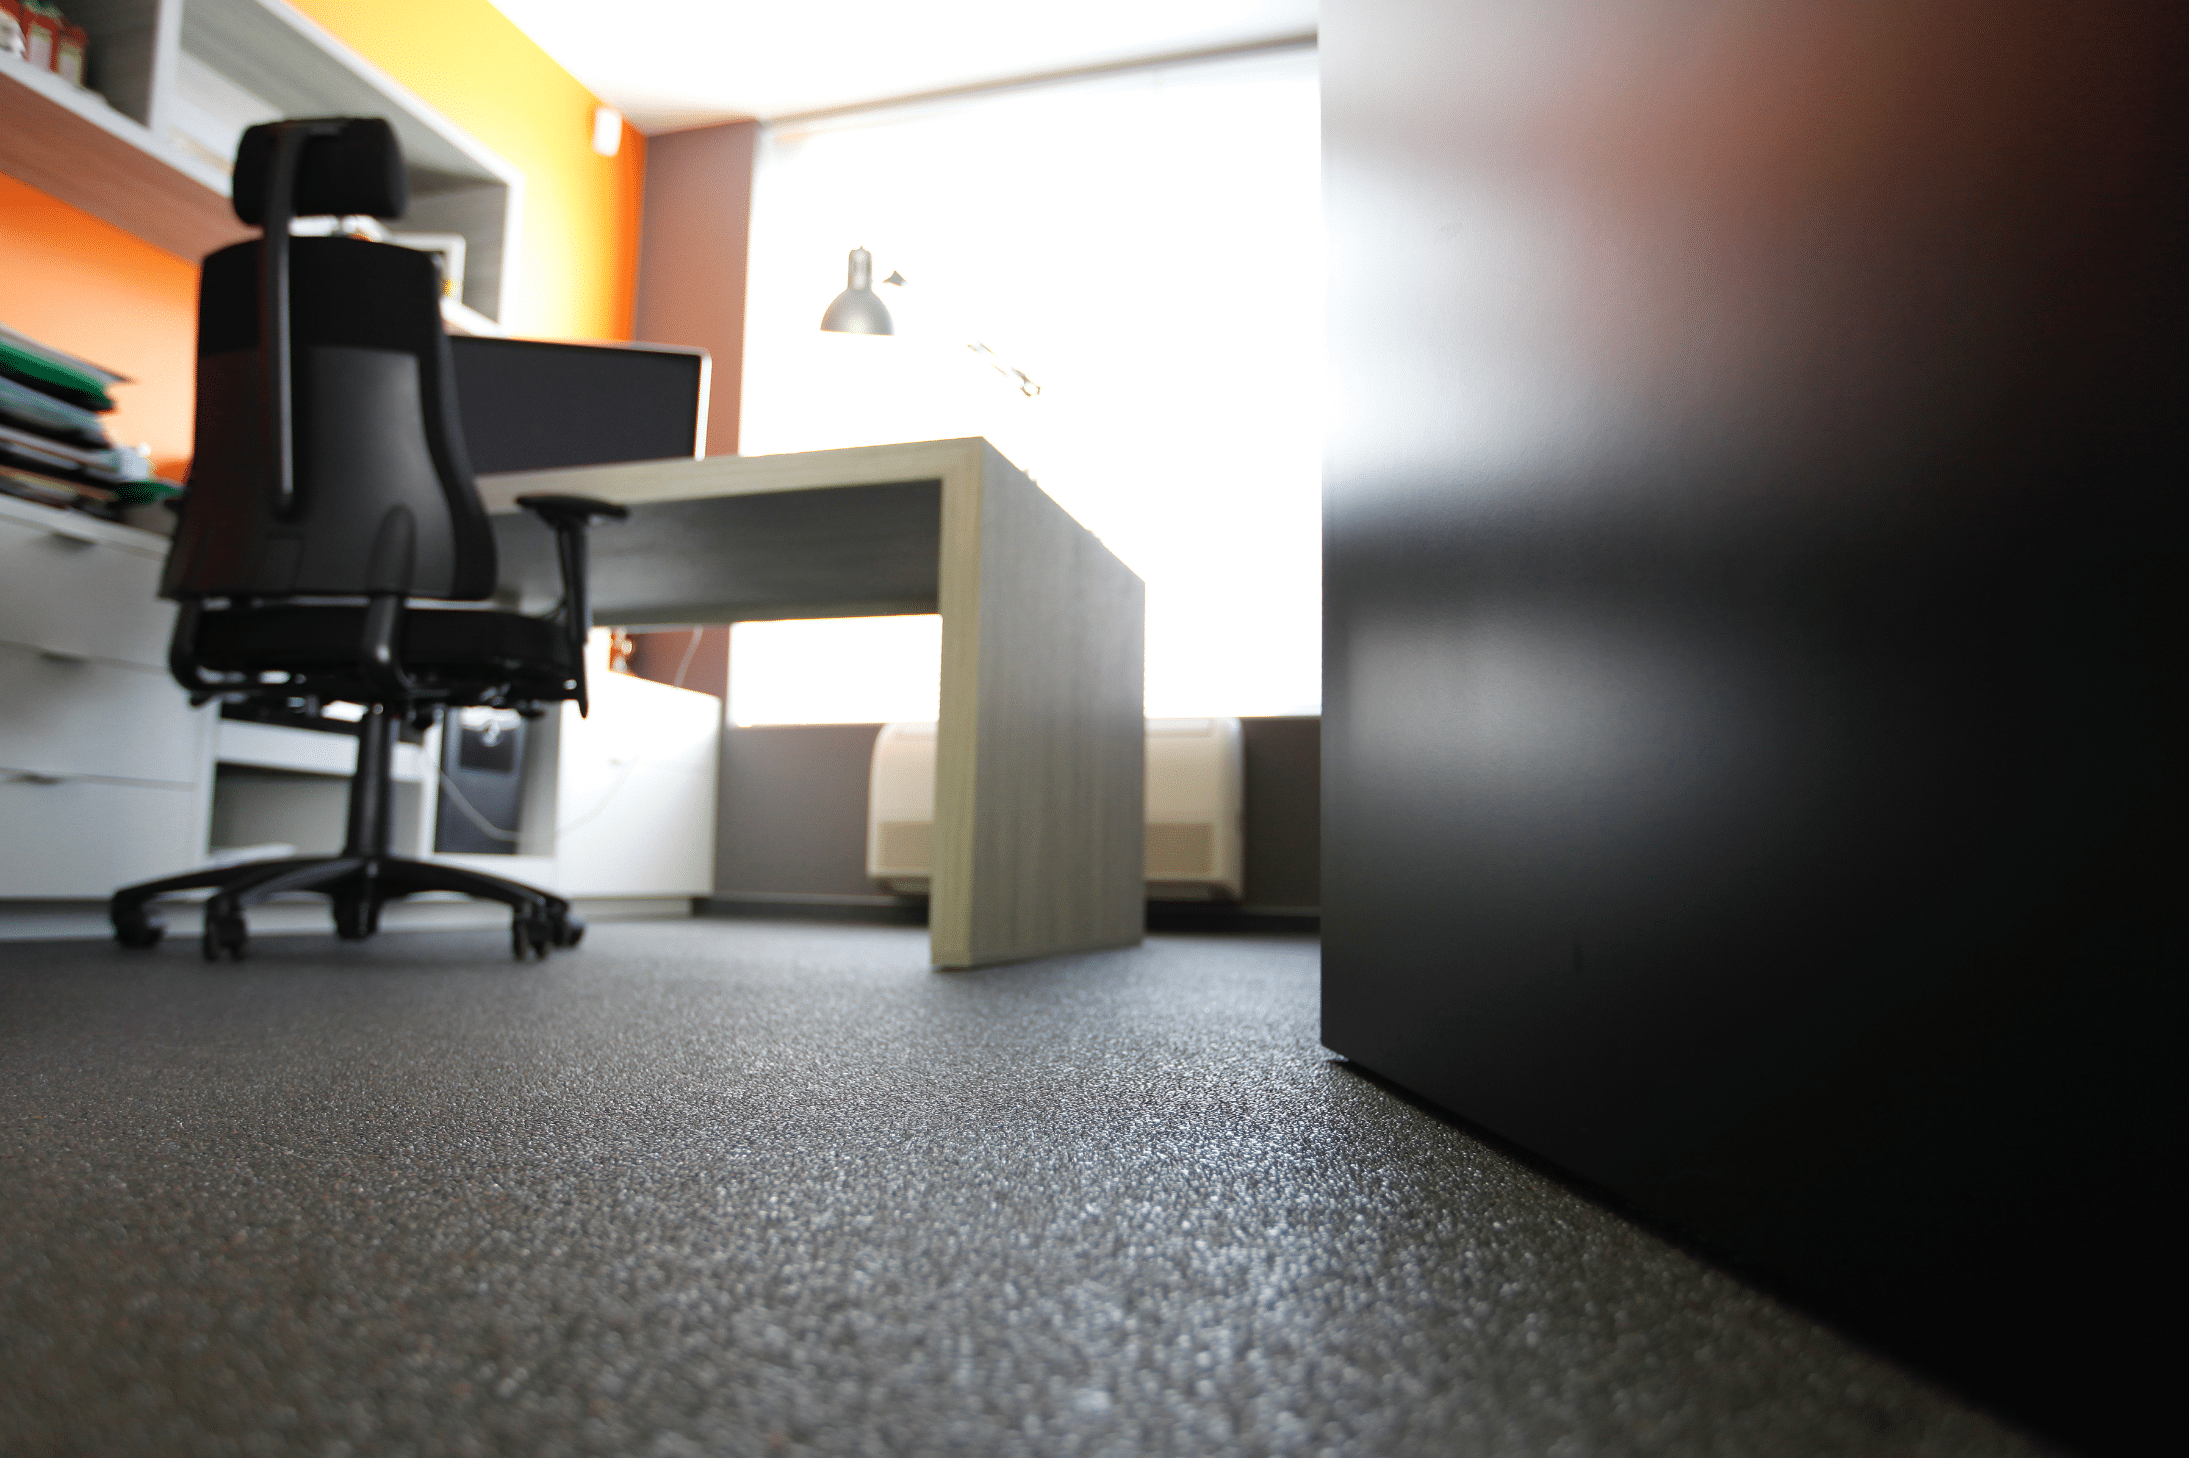 stoneCARPET zeigt einen dunklen Natursteinteppich am Boden einer Büros mit Schreibtisch und mehreren Kommoden.